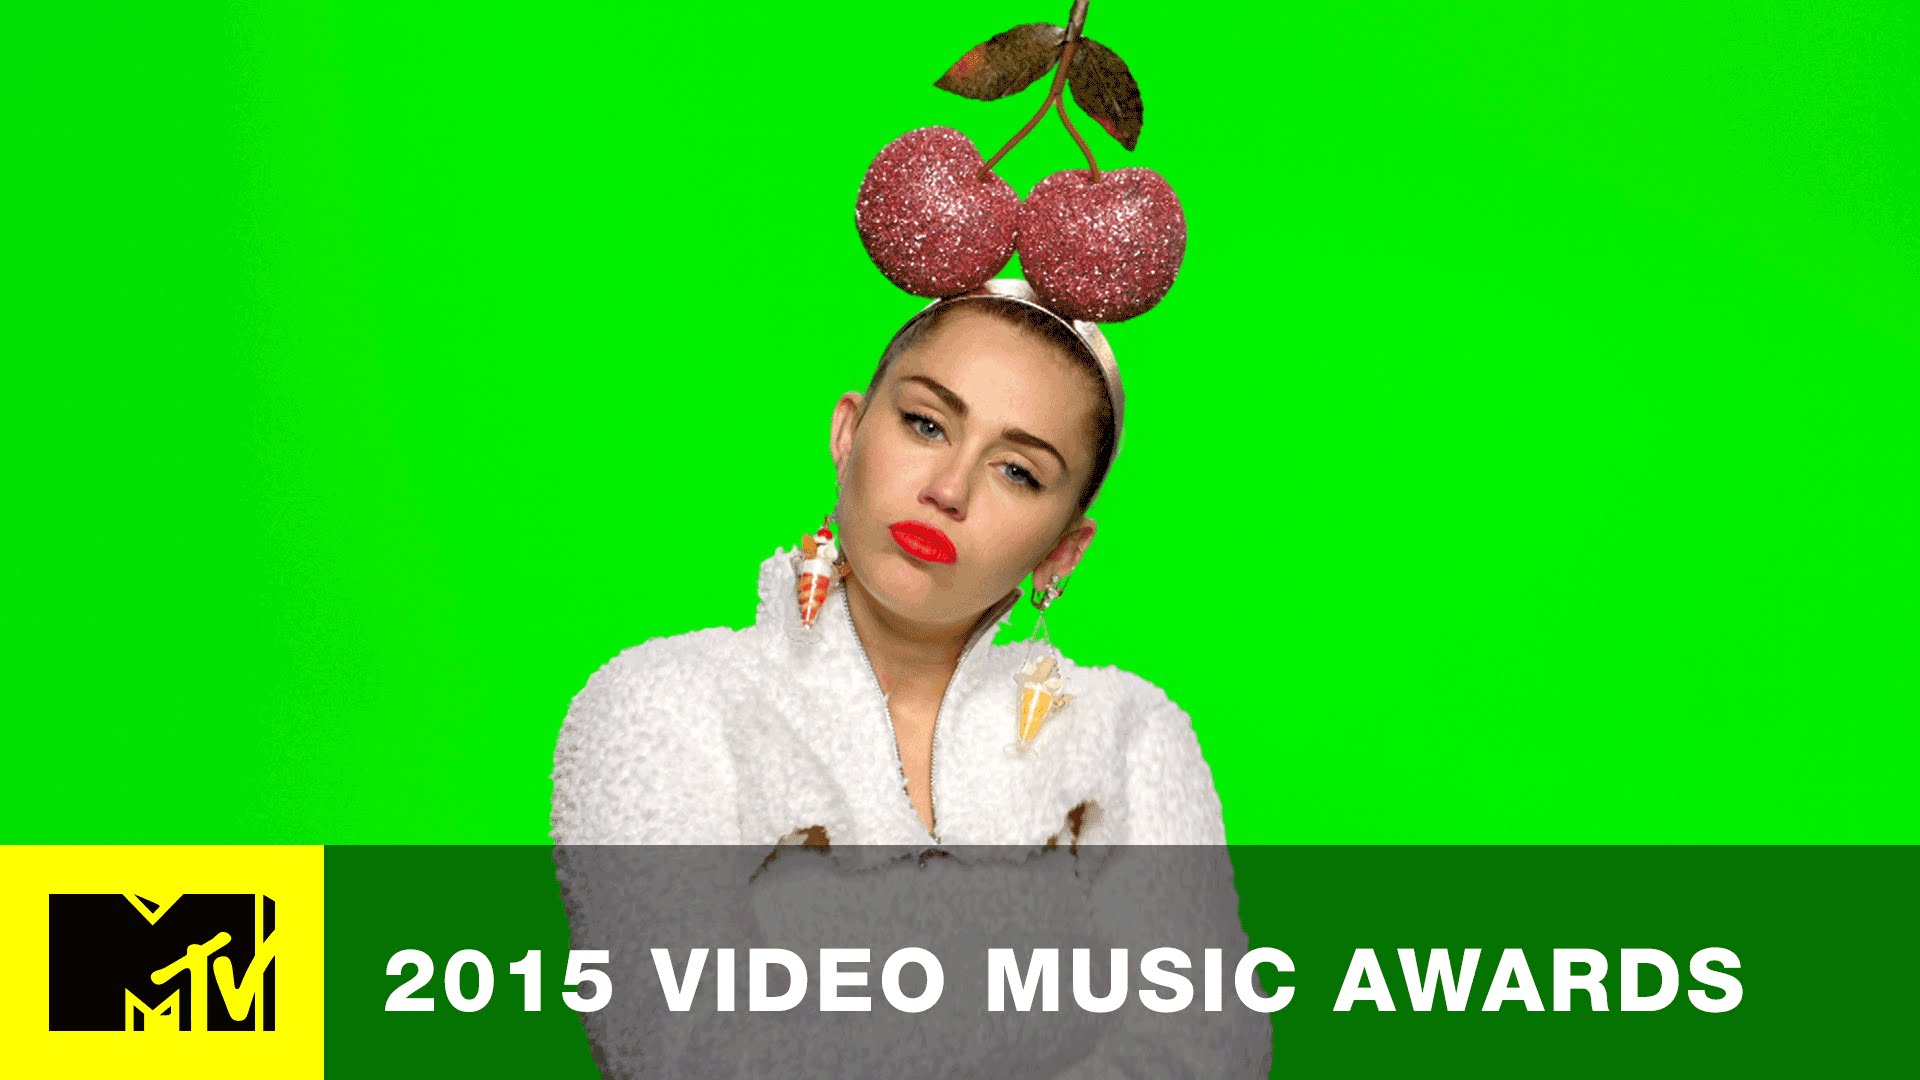 Schaust du die Video Music Awards 2015?